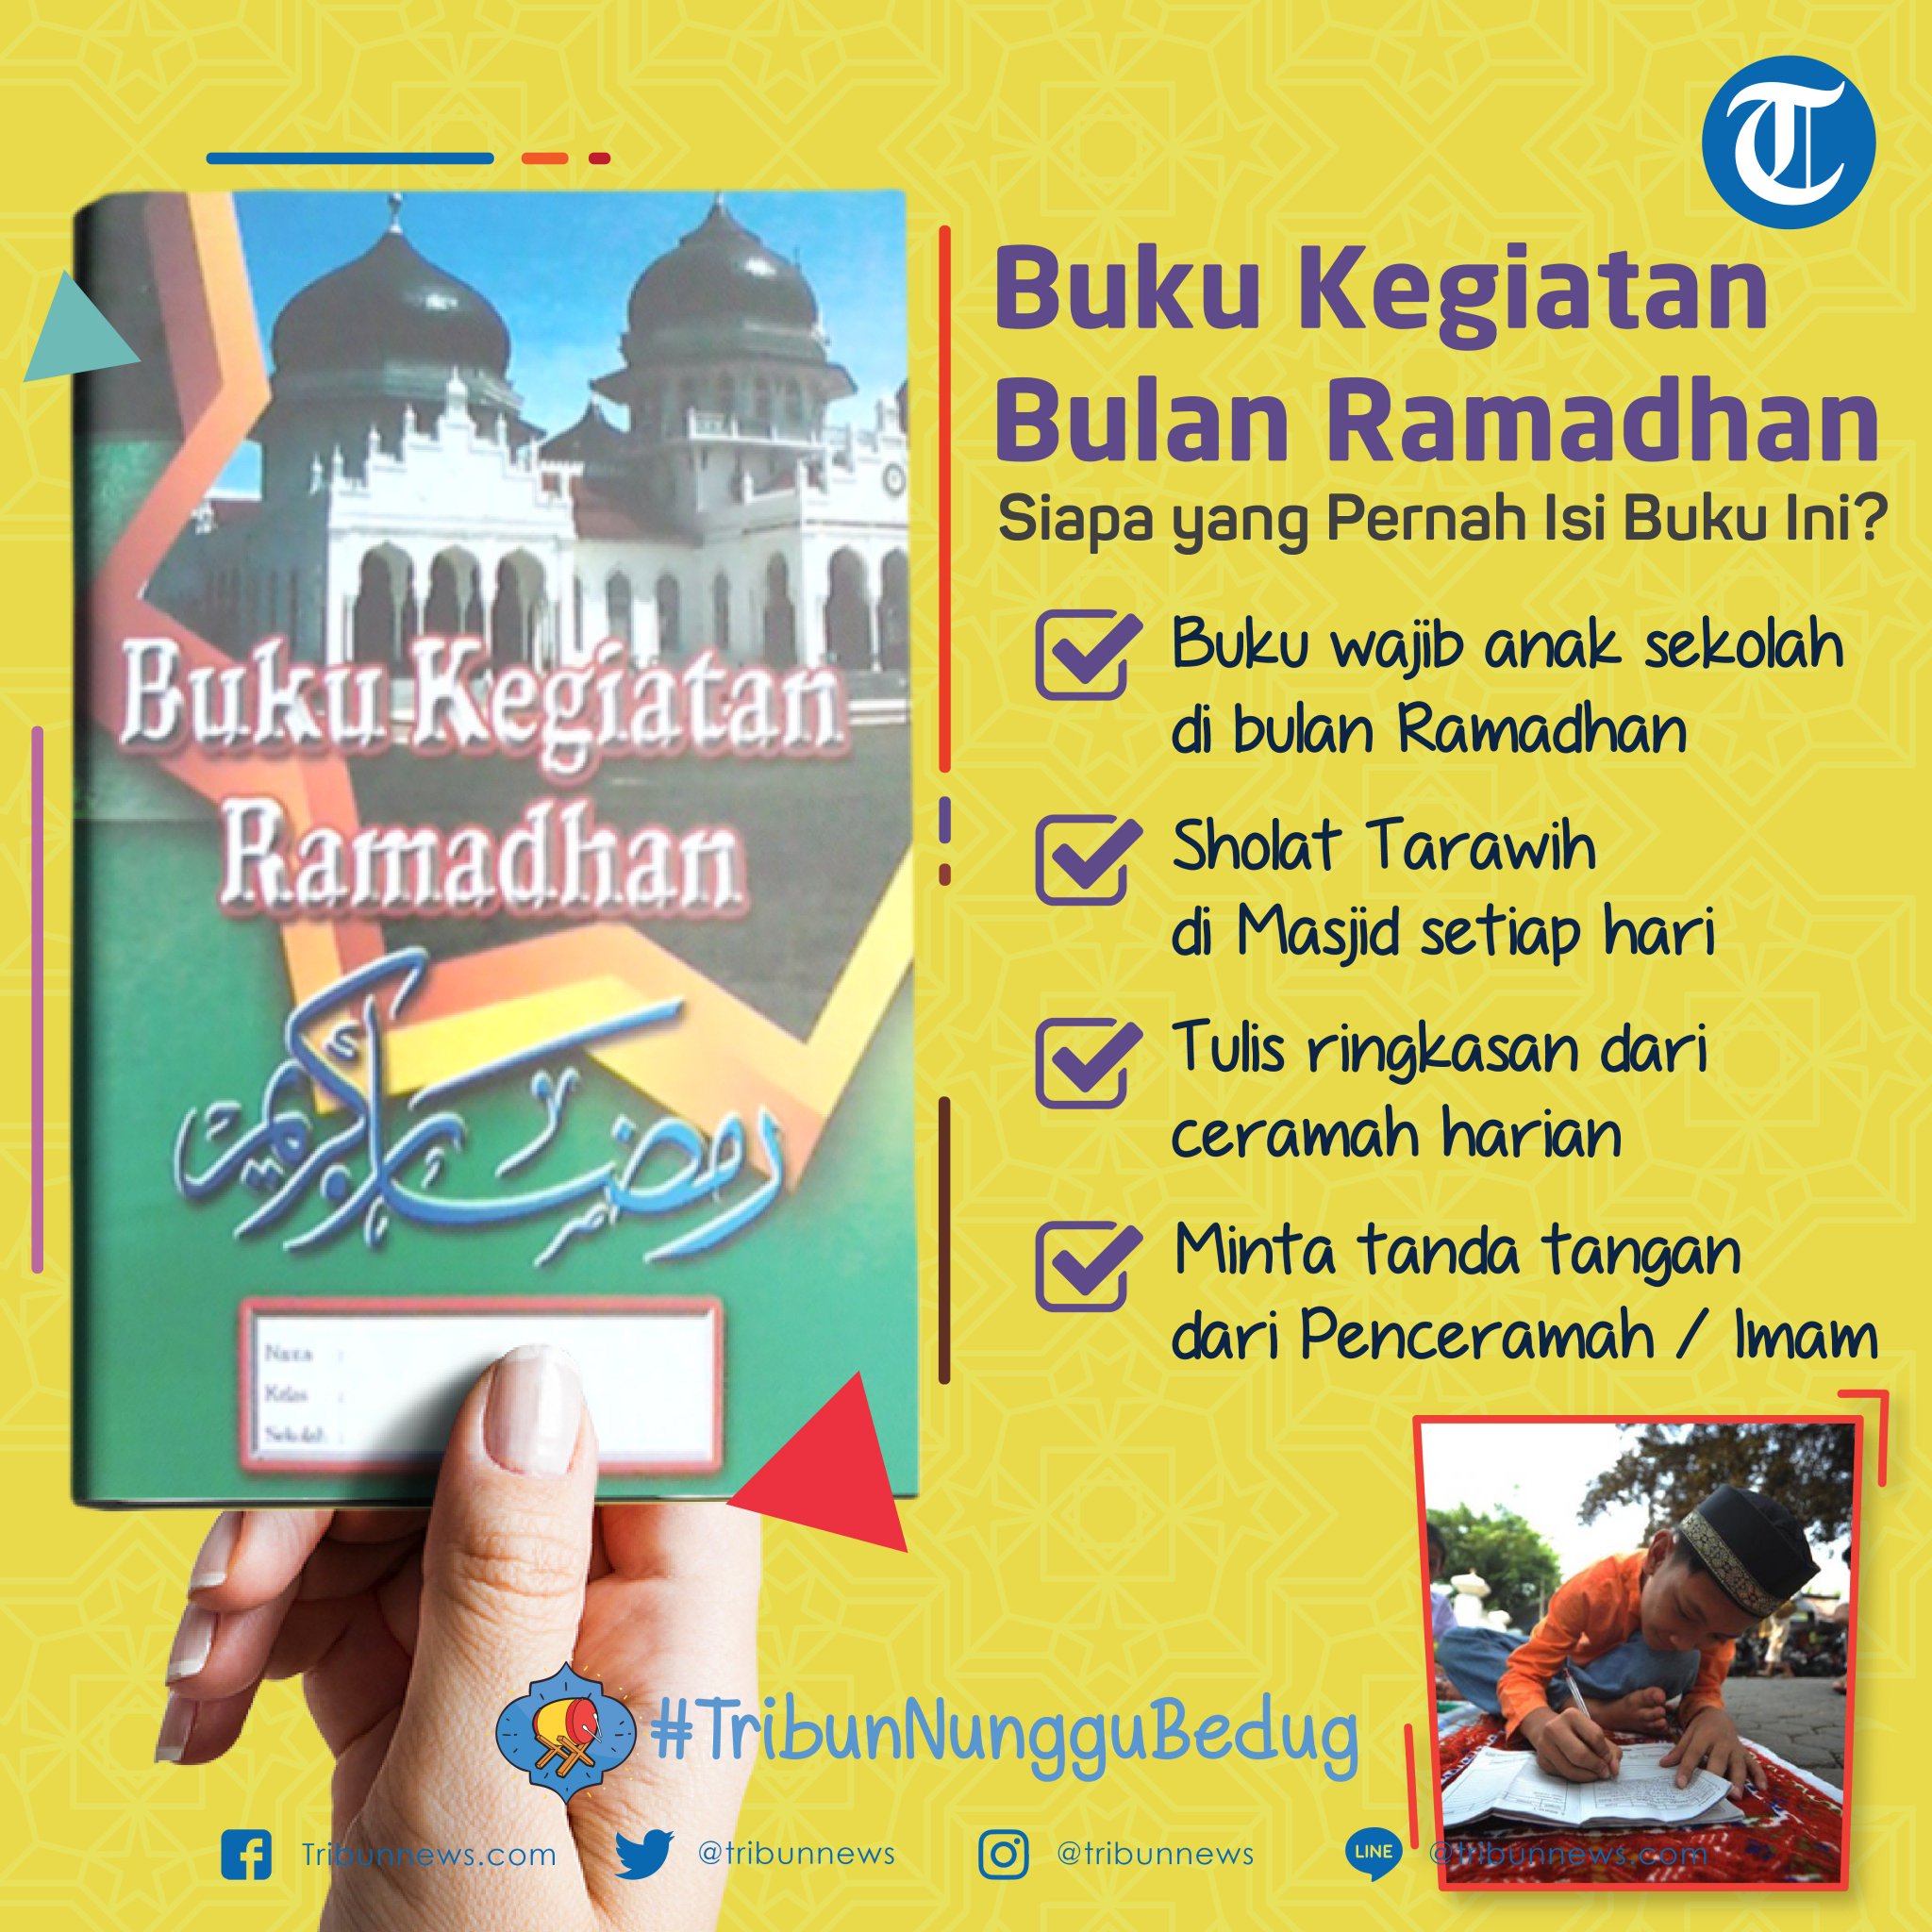 kita mau ajak kalian nostalgia dengan kebiasaan saat kecil dulu di bulan puasa Ingat kan dengan Buku Kegiatan Ramadhan ini Buku wajib anak sekolah